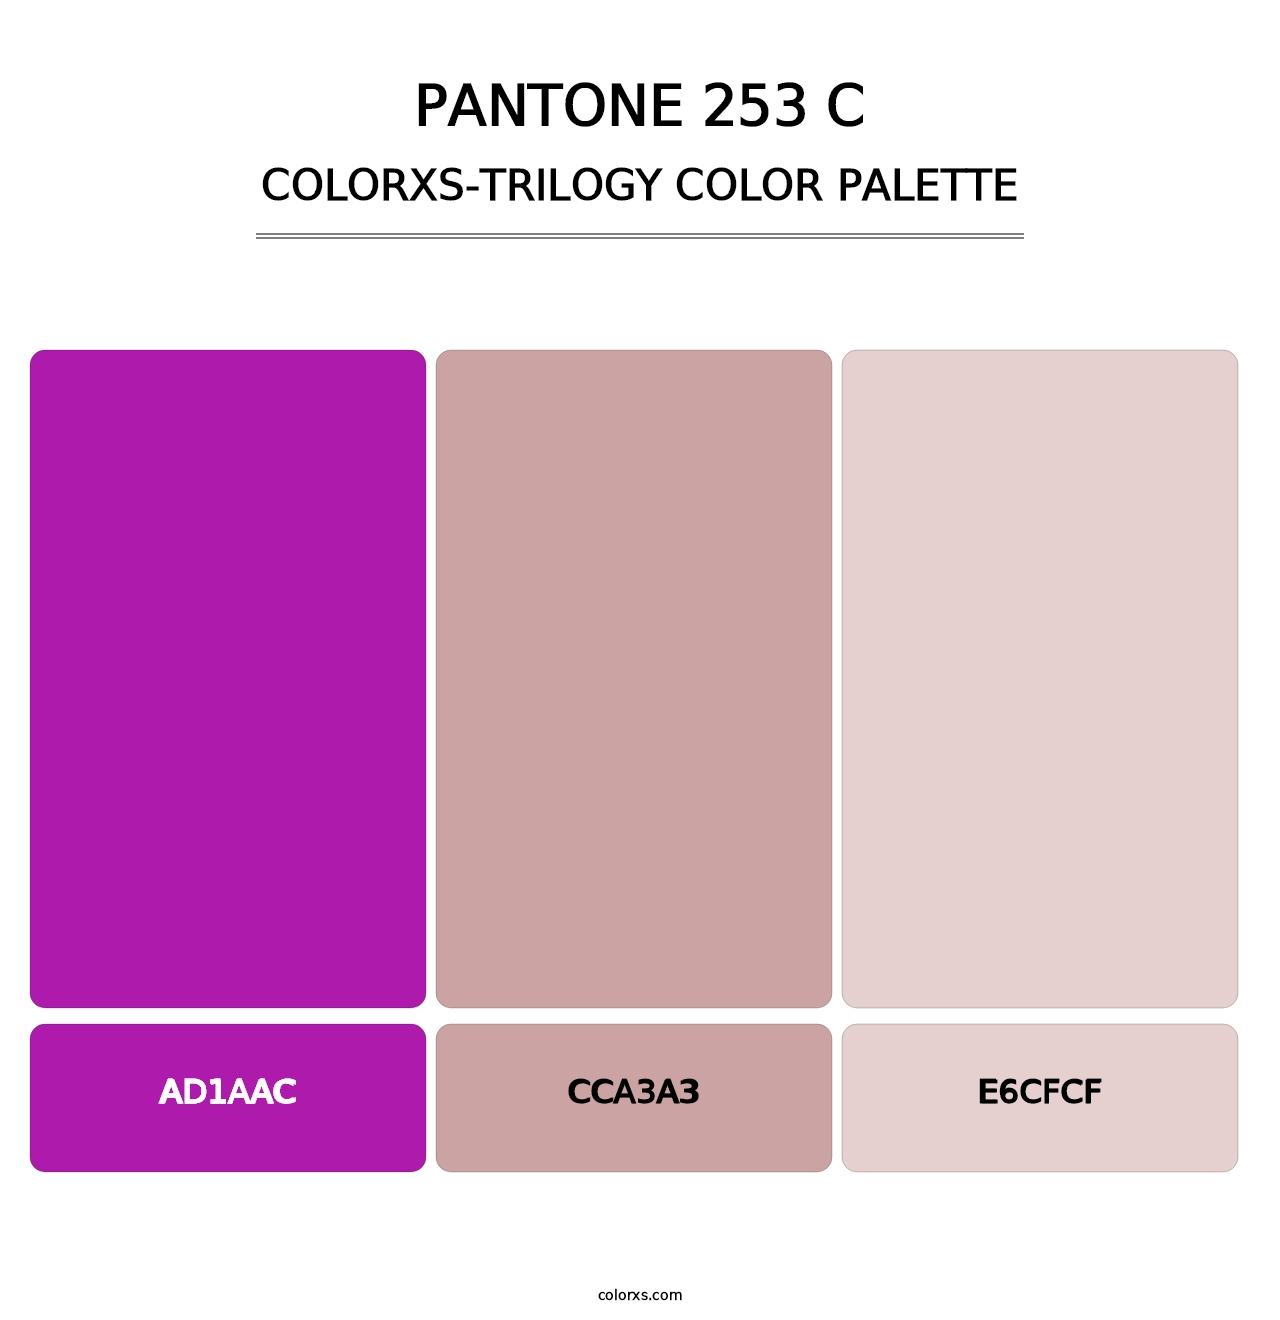 PANTONE 253 C - Colorxs Trilogy Palette